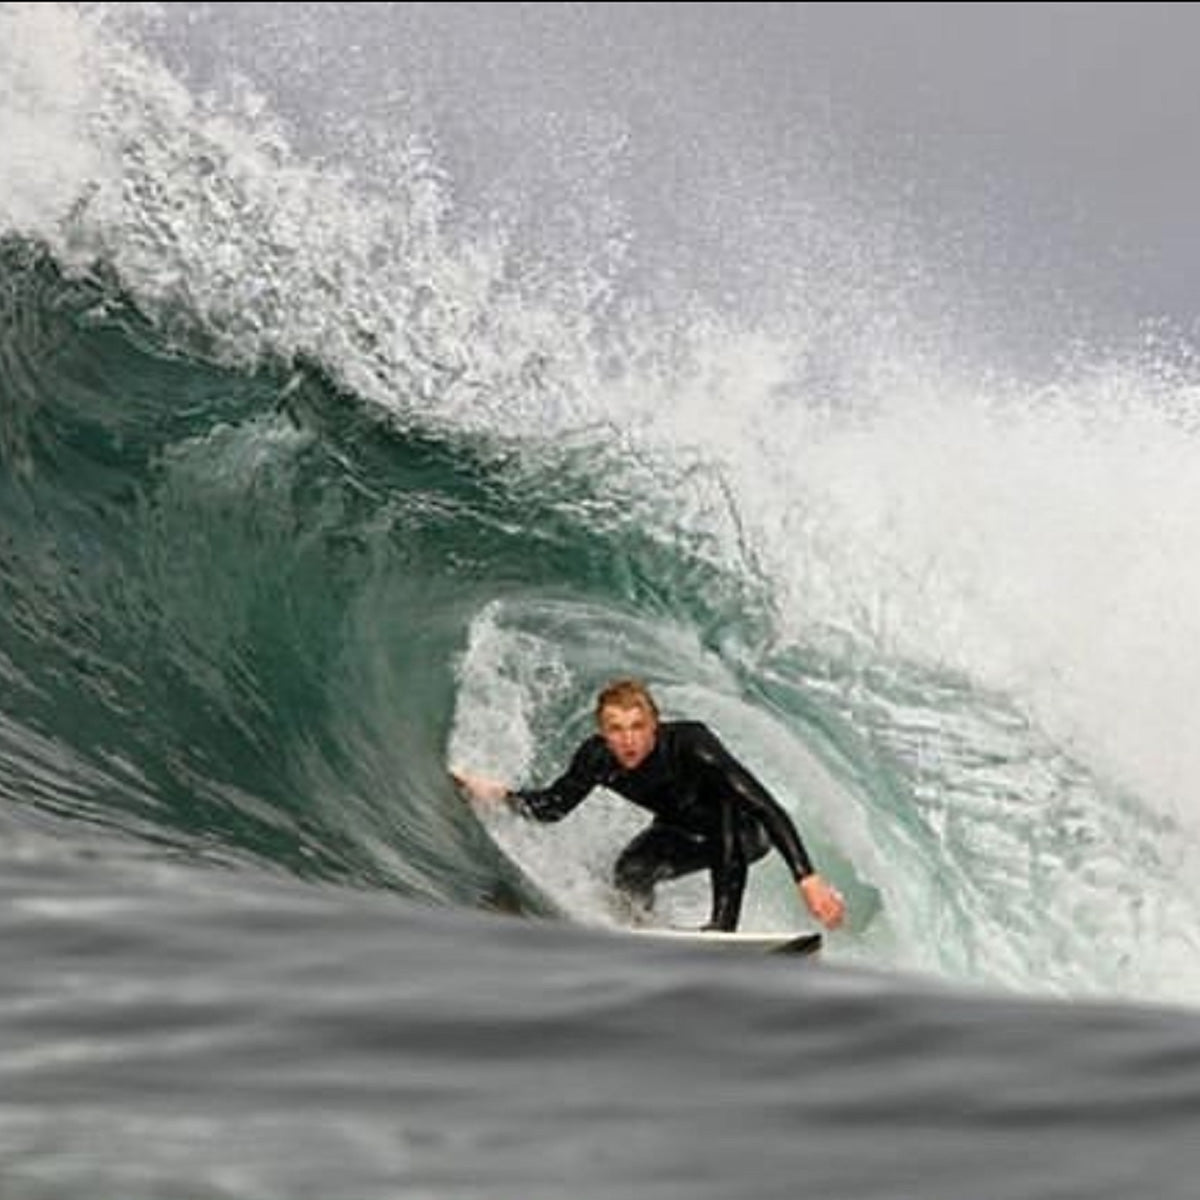 Willie Eagleton, Pacific Wave Surf Shop Team Rider